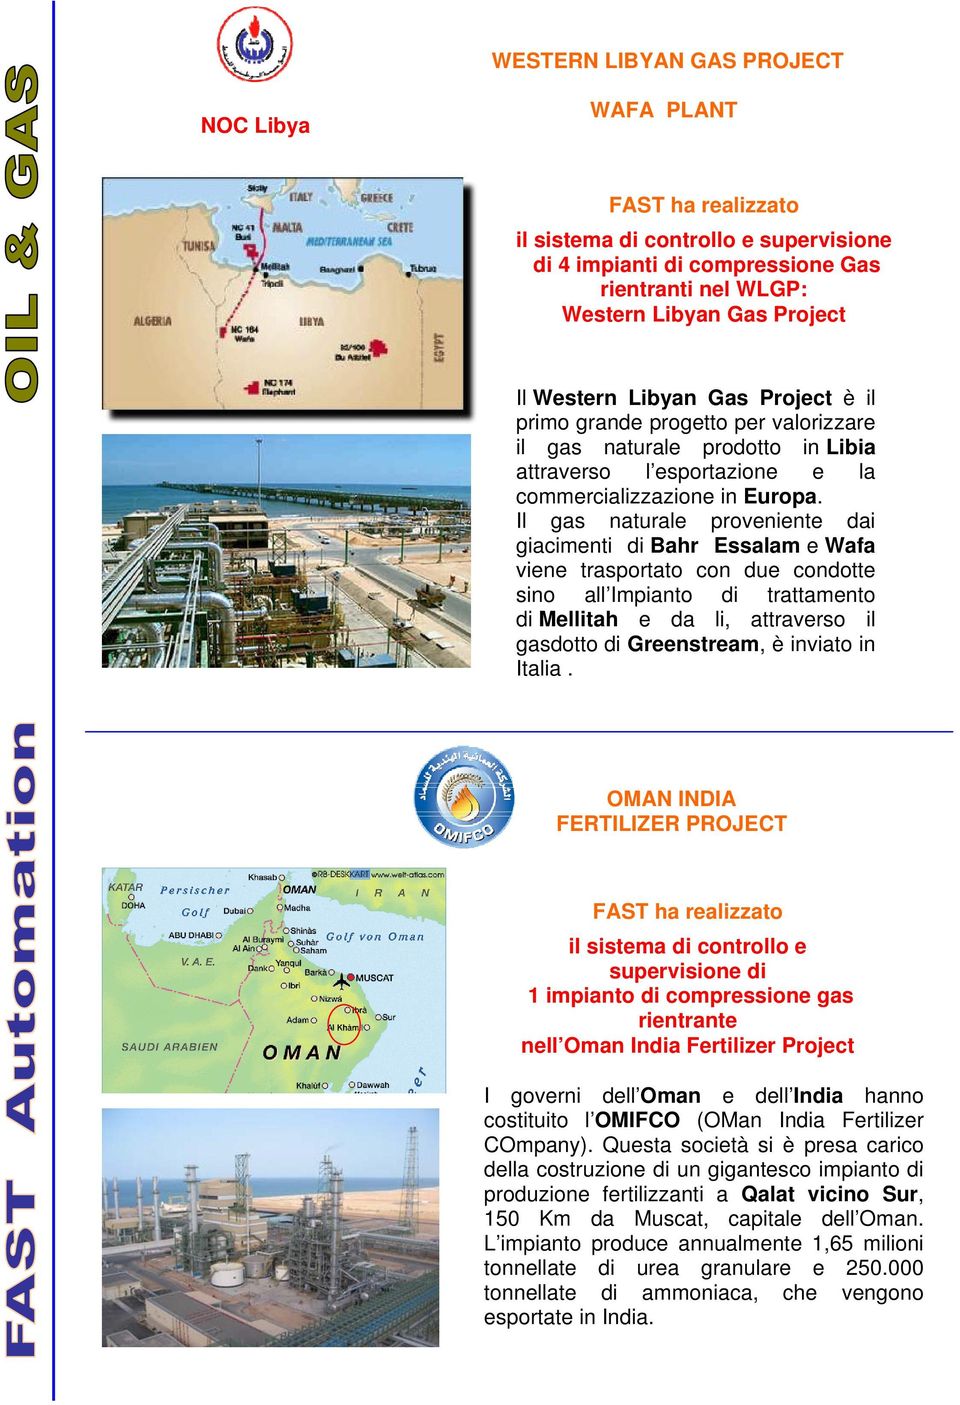 Il gas naturale proveniente dai giacimenti di Bahr Essalam e Wafa viene trasportato con due condotte sino all Impianto di trattamento di Mellitah e da li, attraverso il gasdotto di Greenstream, è